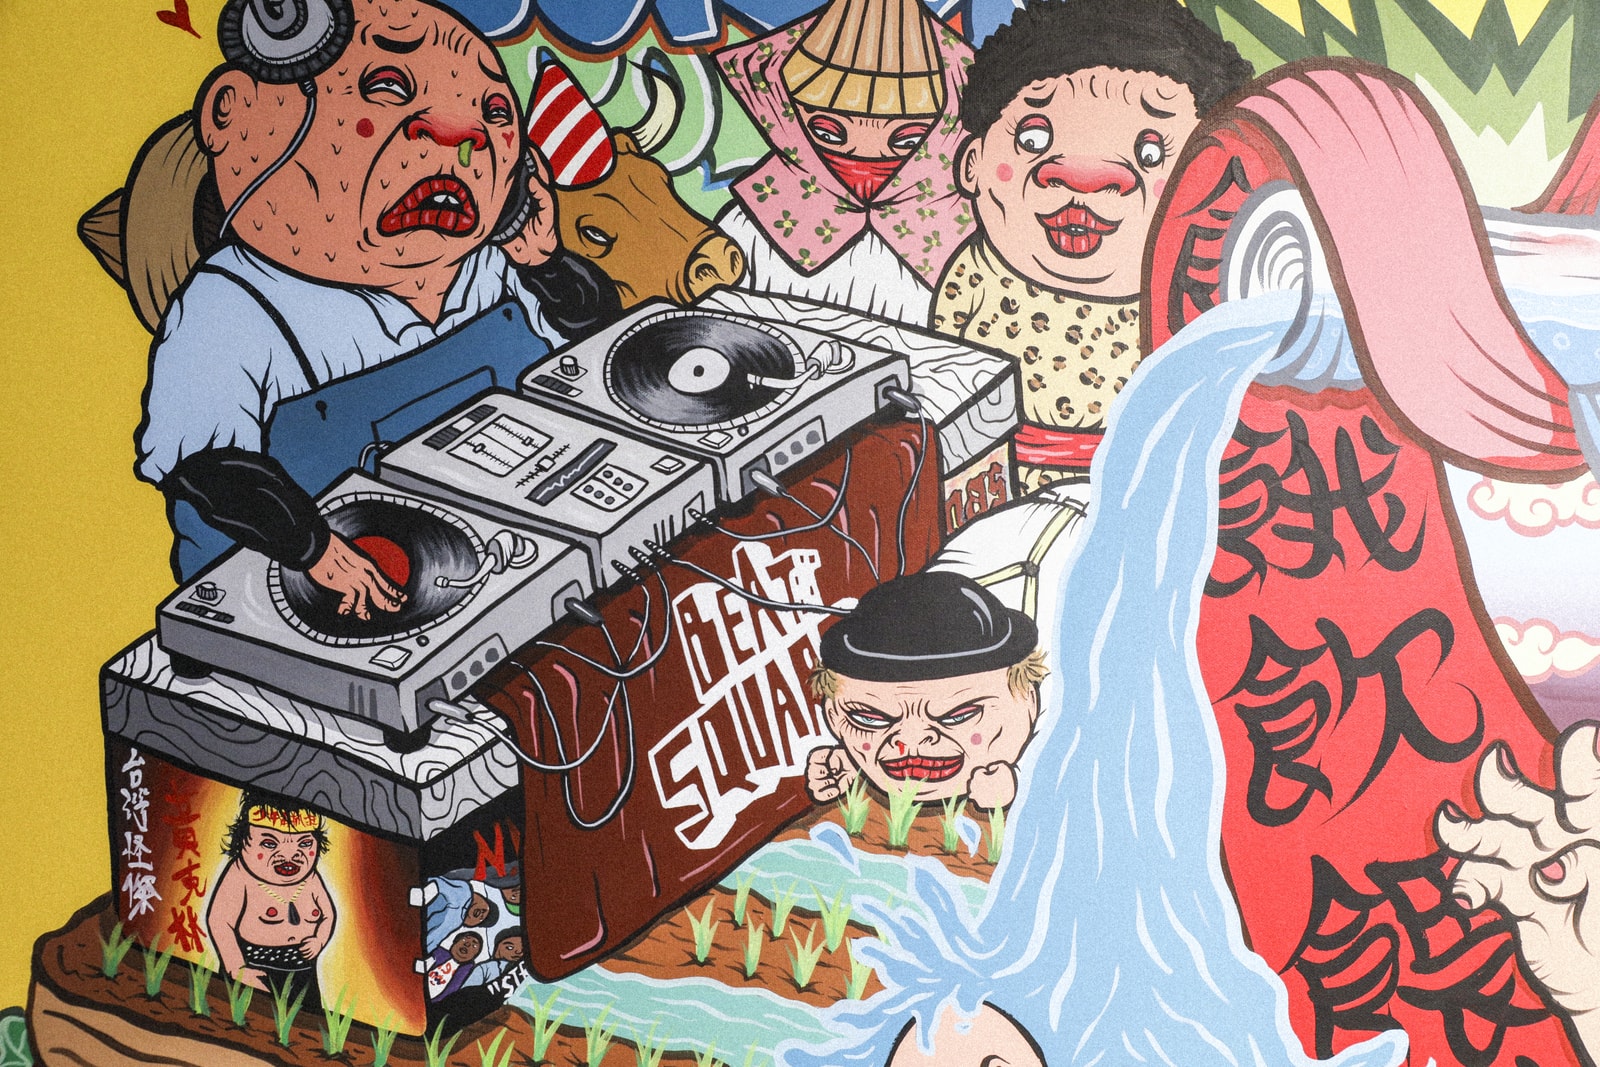 走進「塗鴉俱樂部」窺探台灣九位藝術家之風格與創作